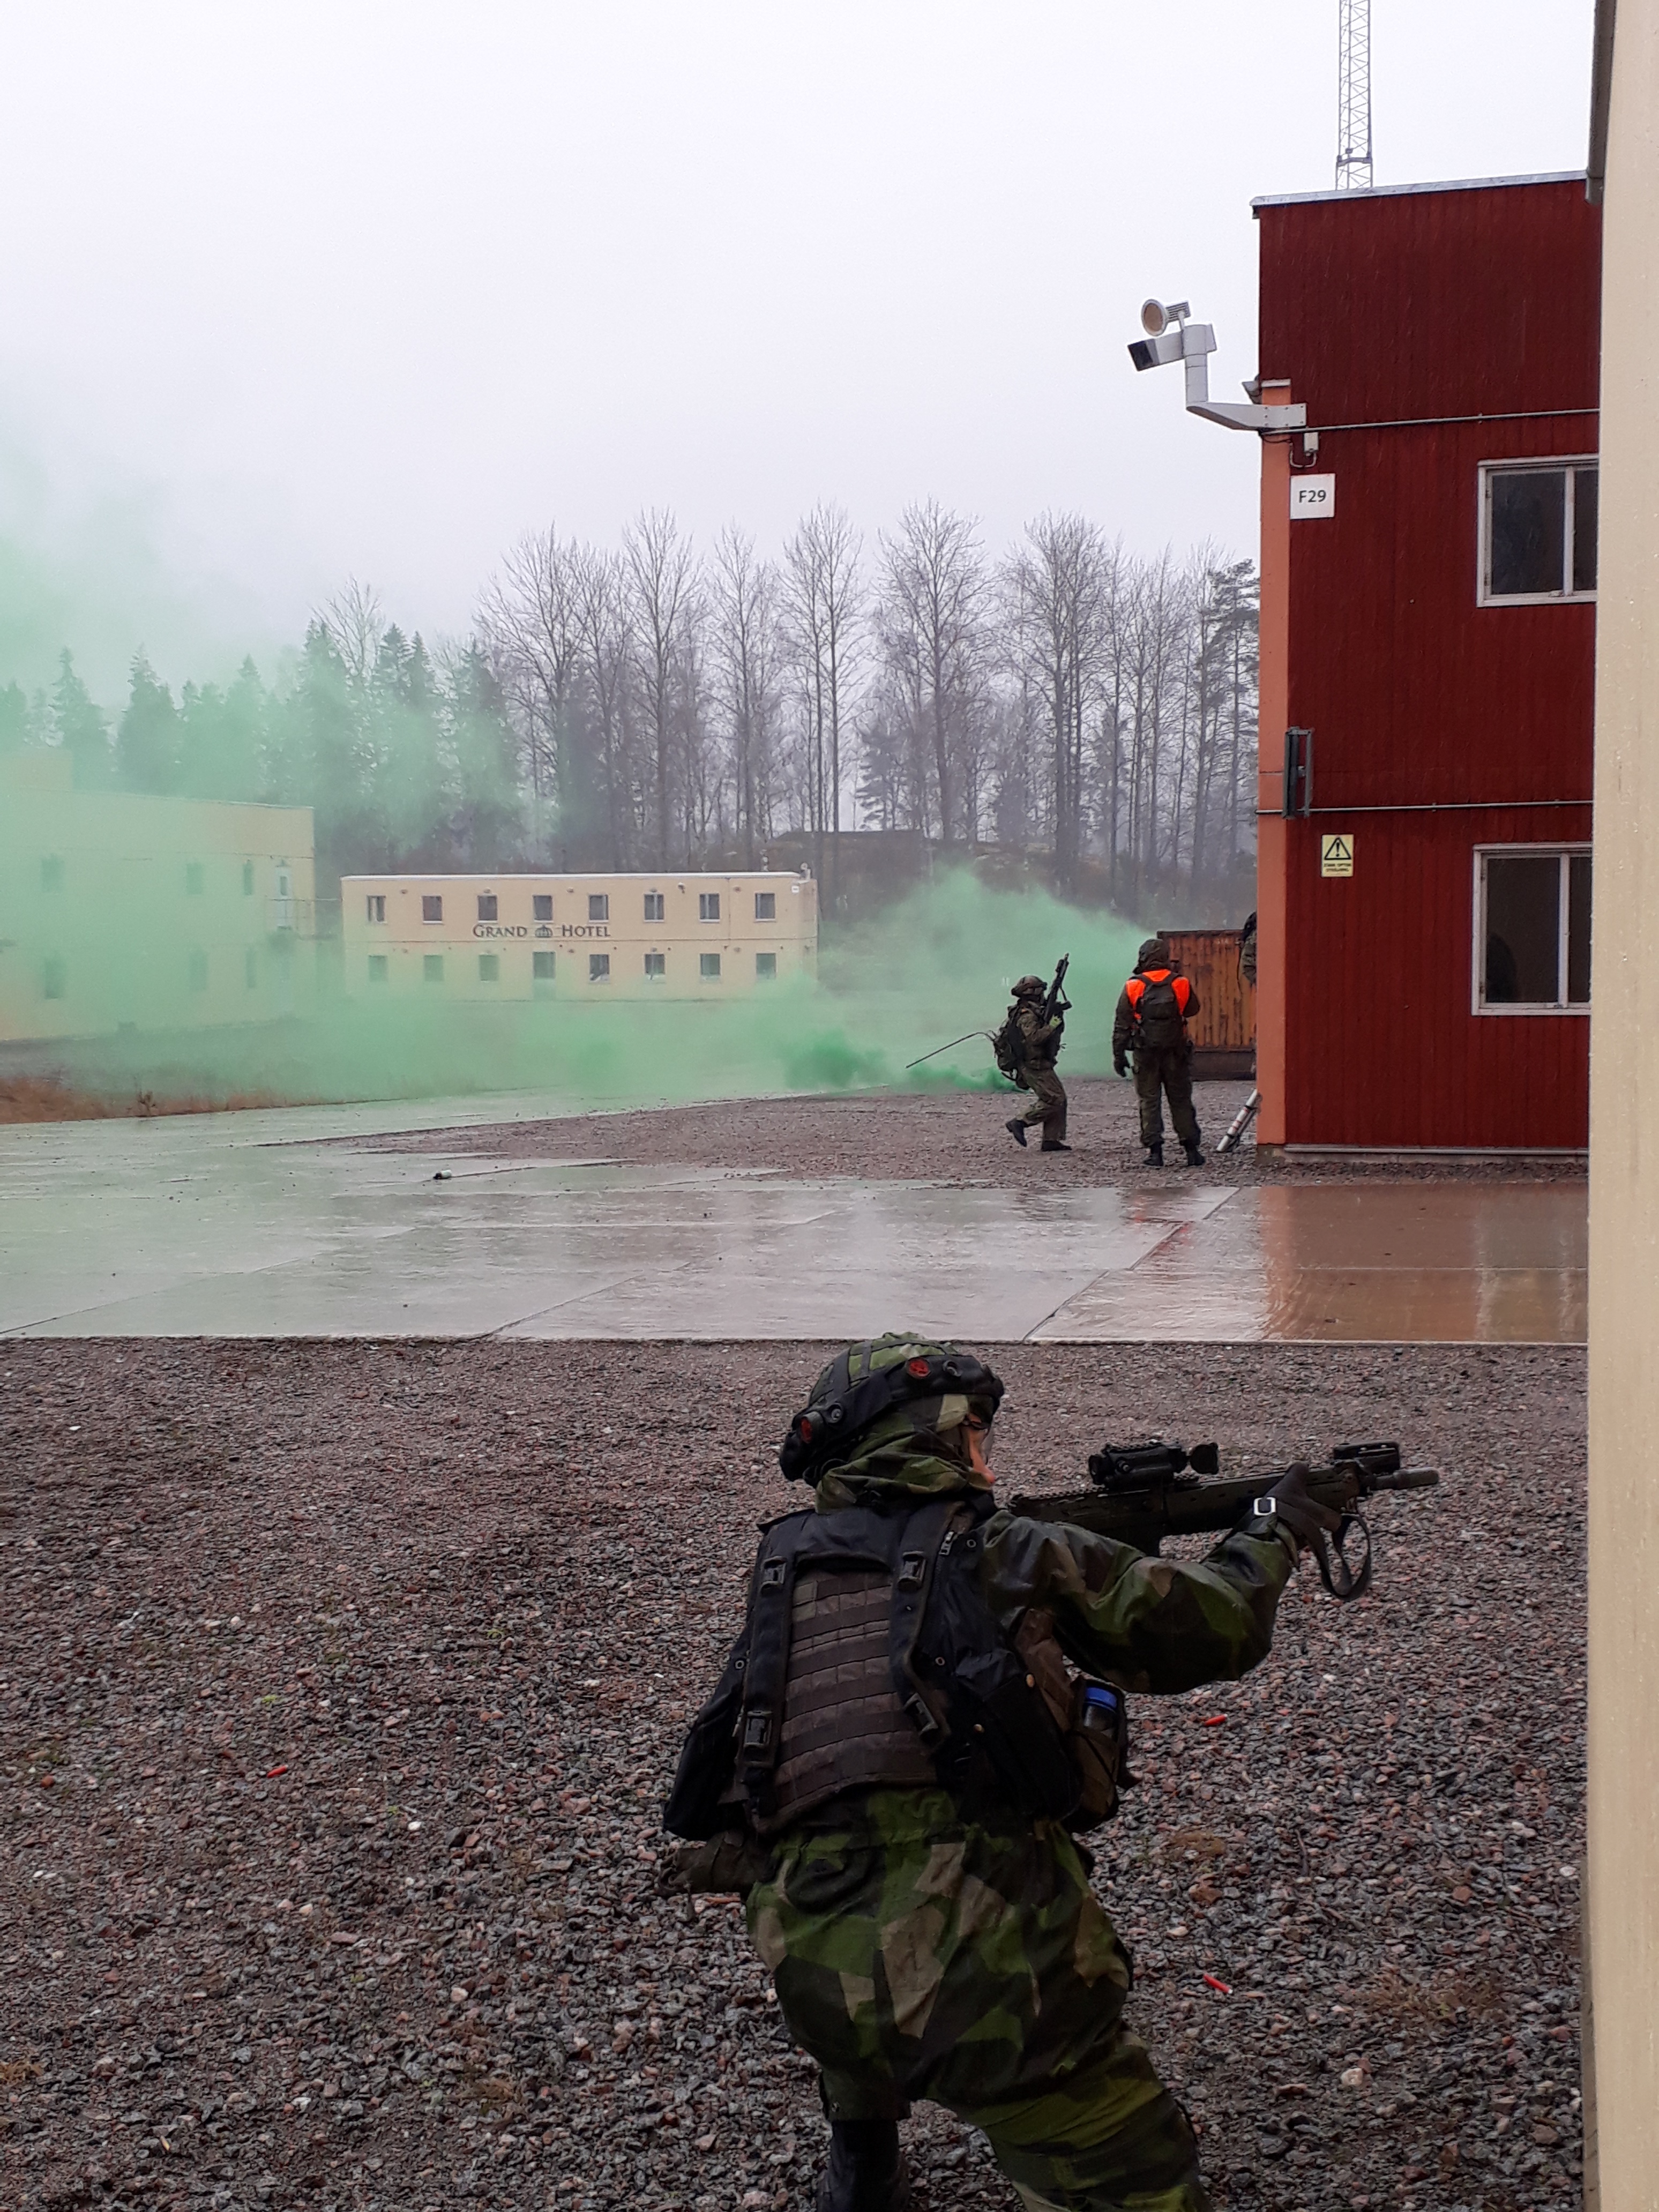 Vihreää savua rakennetun alueen taisteluharjoitusalueella, kamera kuvaa, kun suomalaissotilaat harjoittelevat.